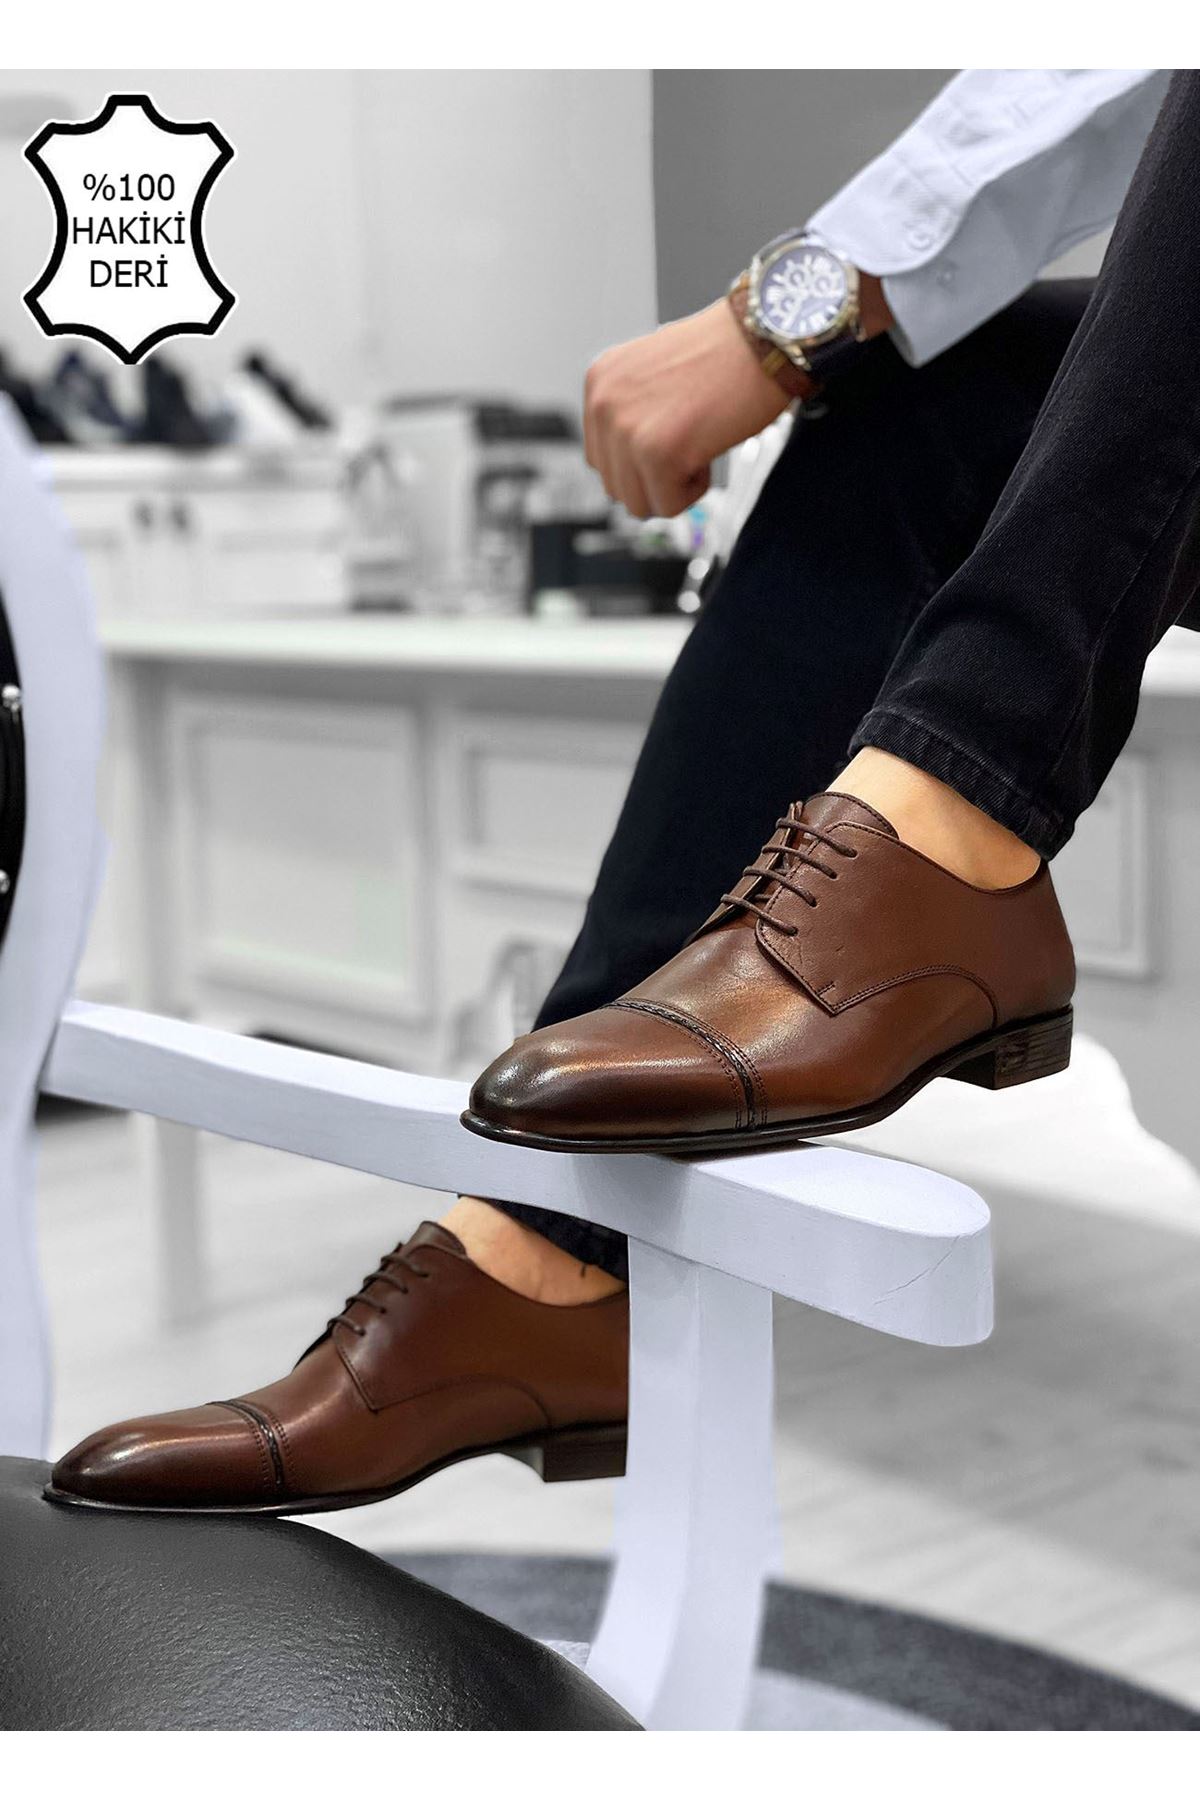 Boy Uzatan Gizli Topuk Taba Örgülü İtalyan Hakiki Deri Erkek Klasik Ayakkabı